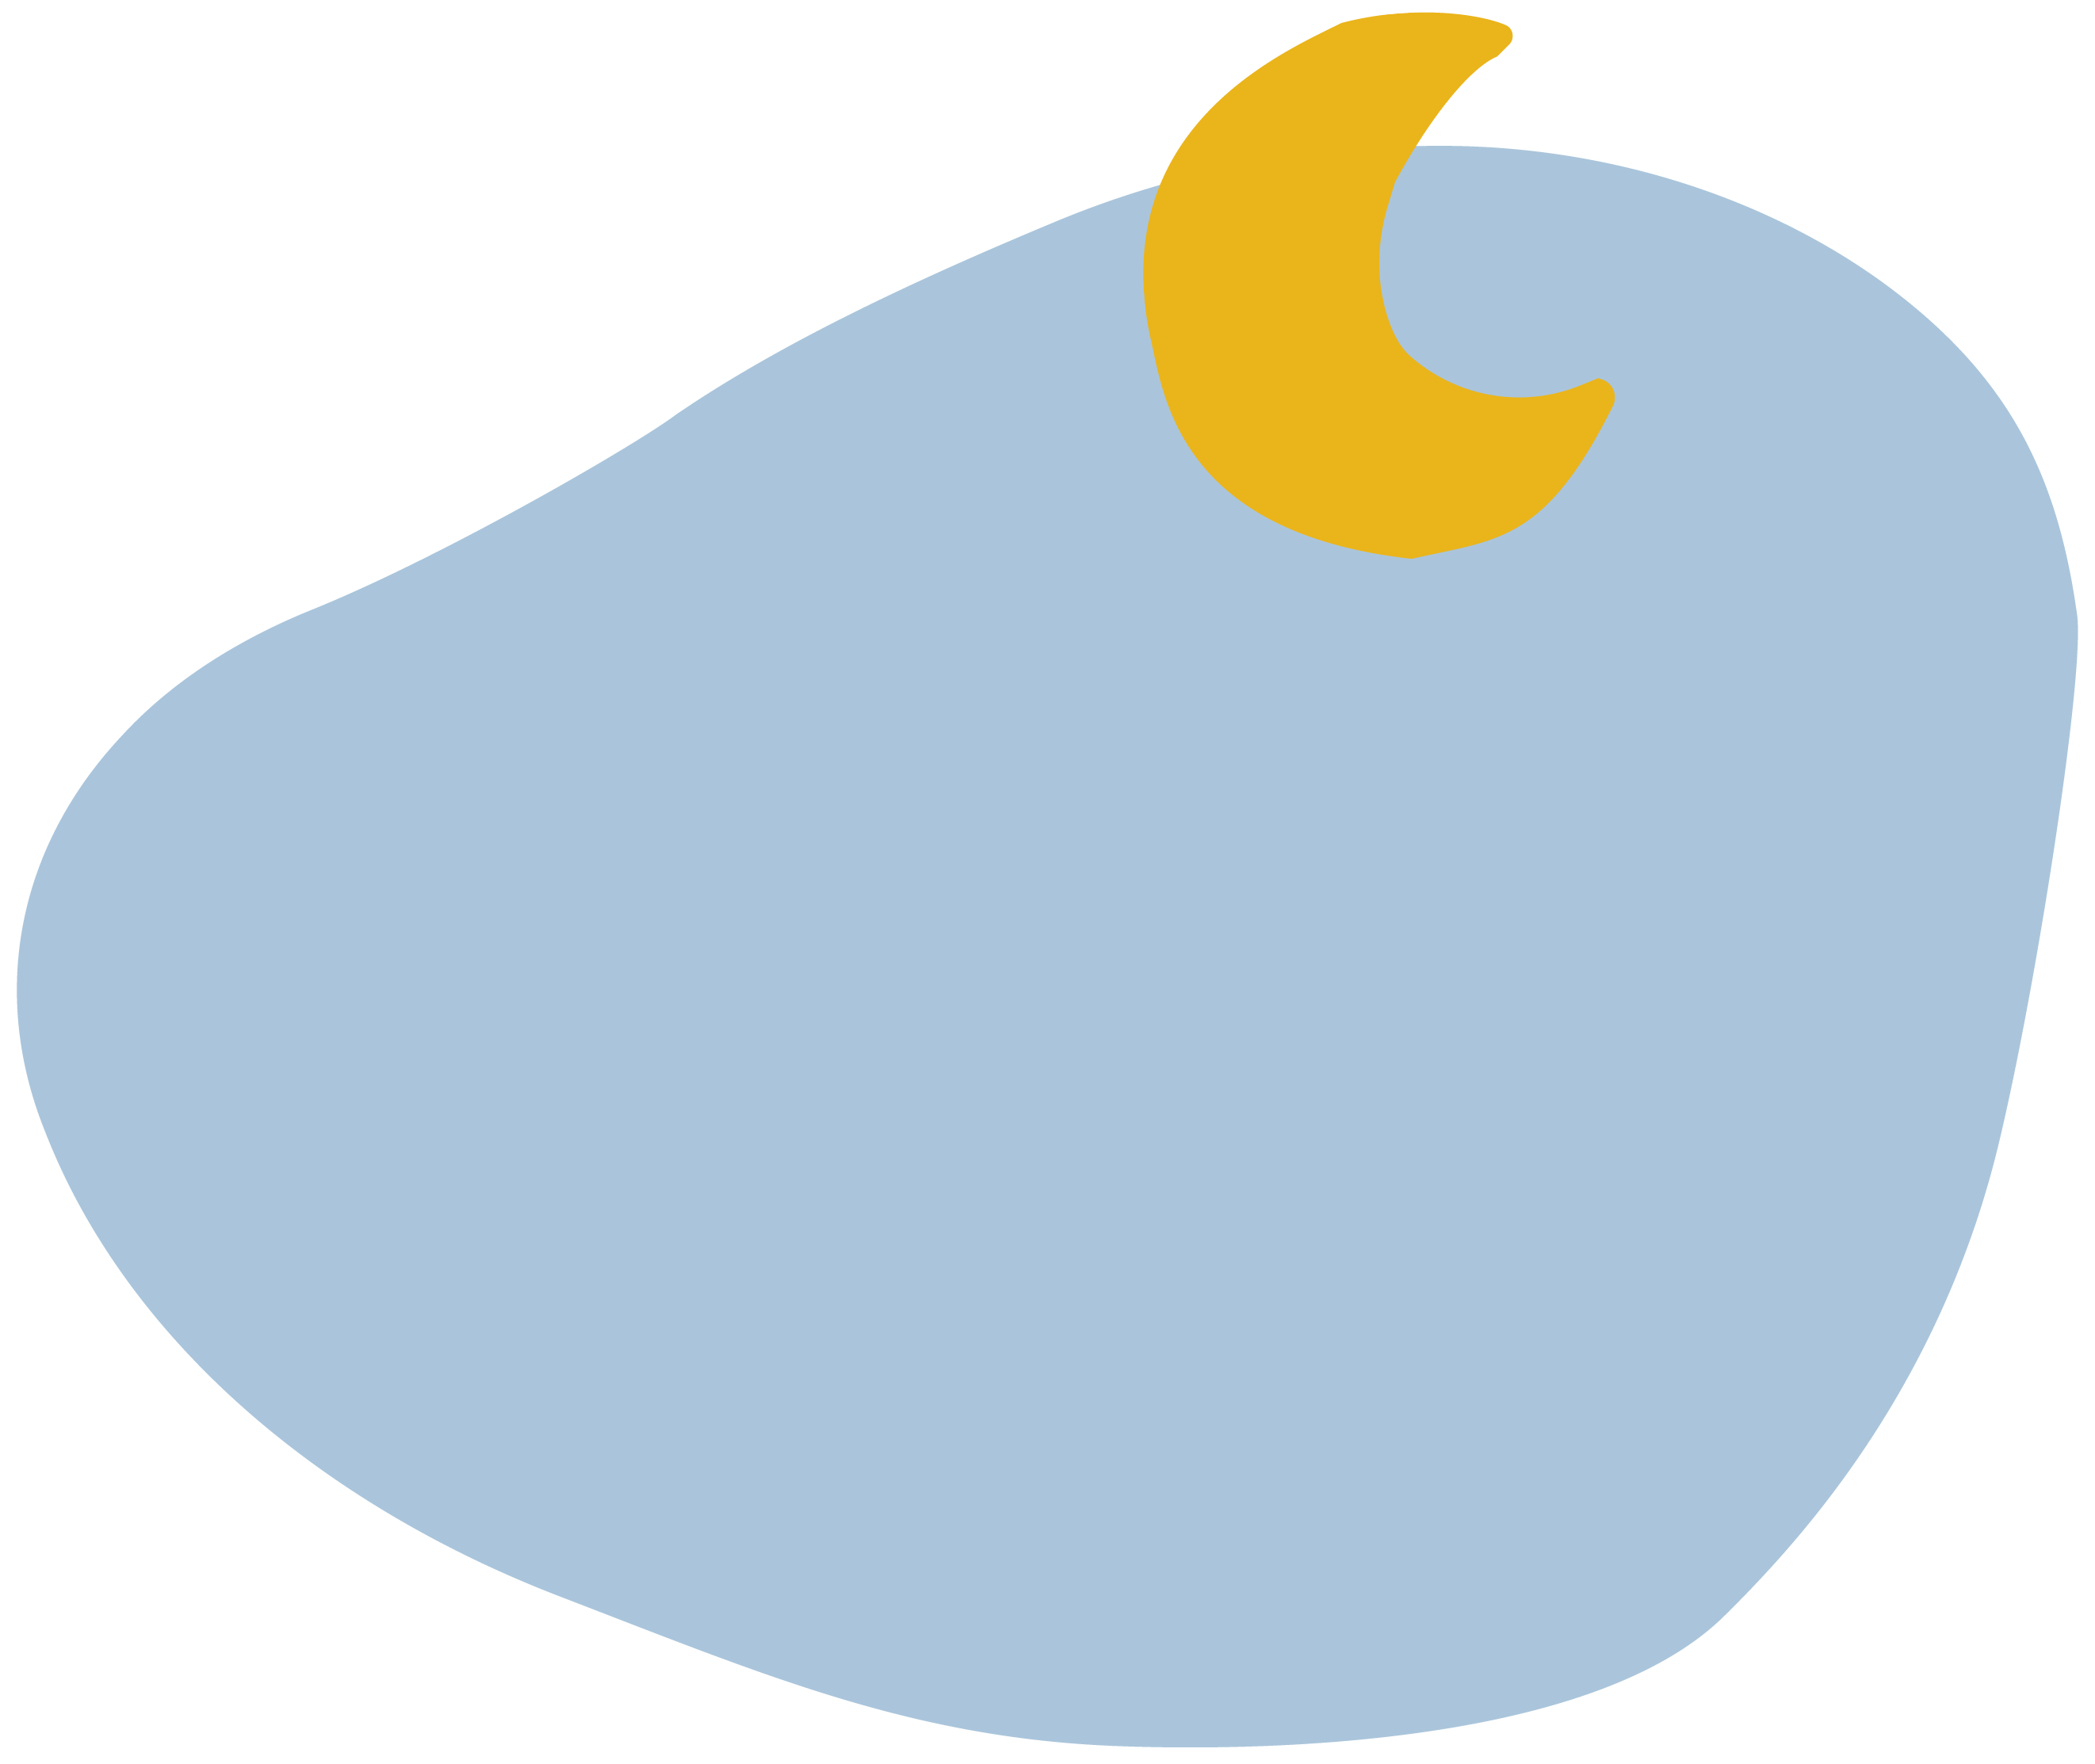 Forme représentant un croissant de lune jaune sur un nuage gris bleuté